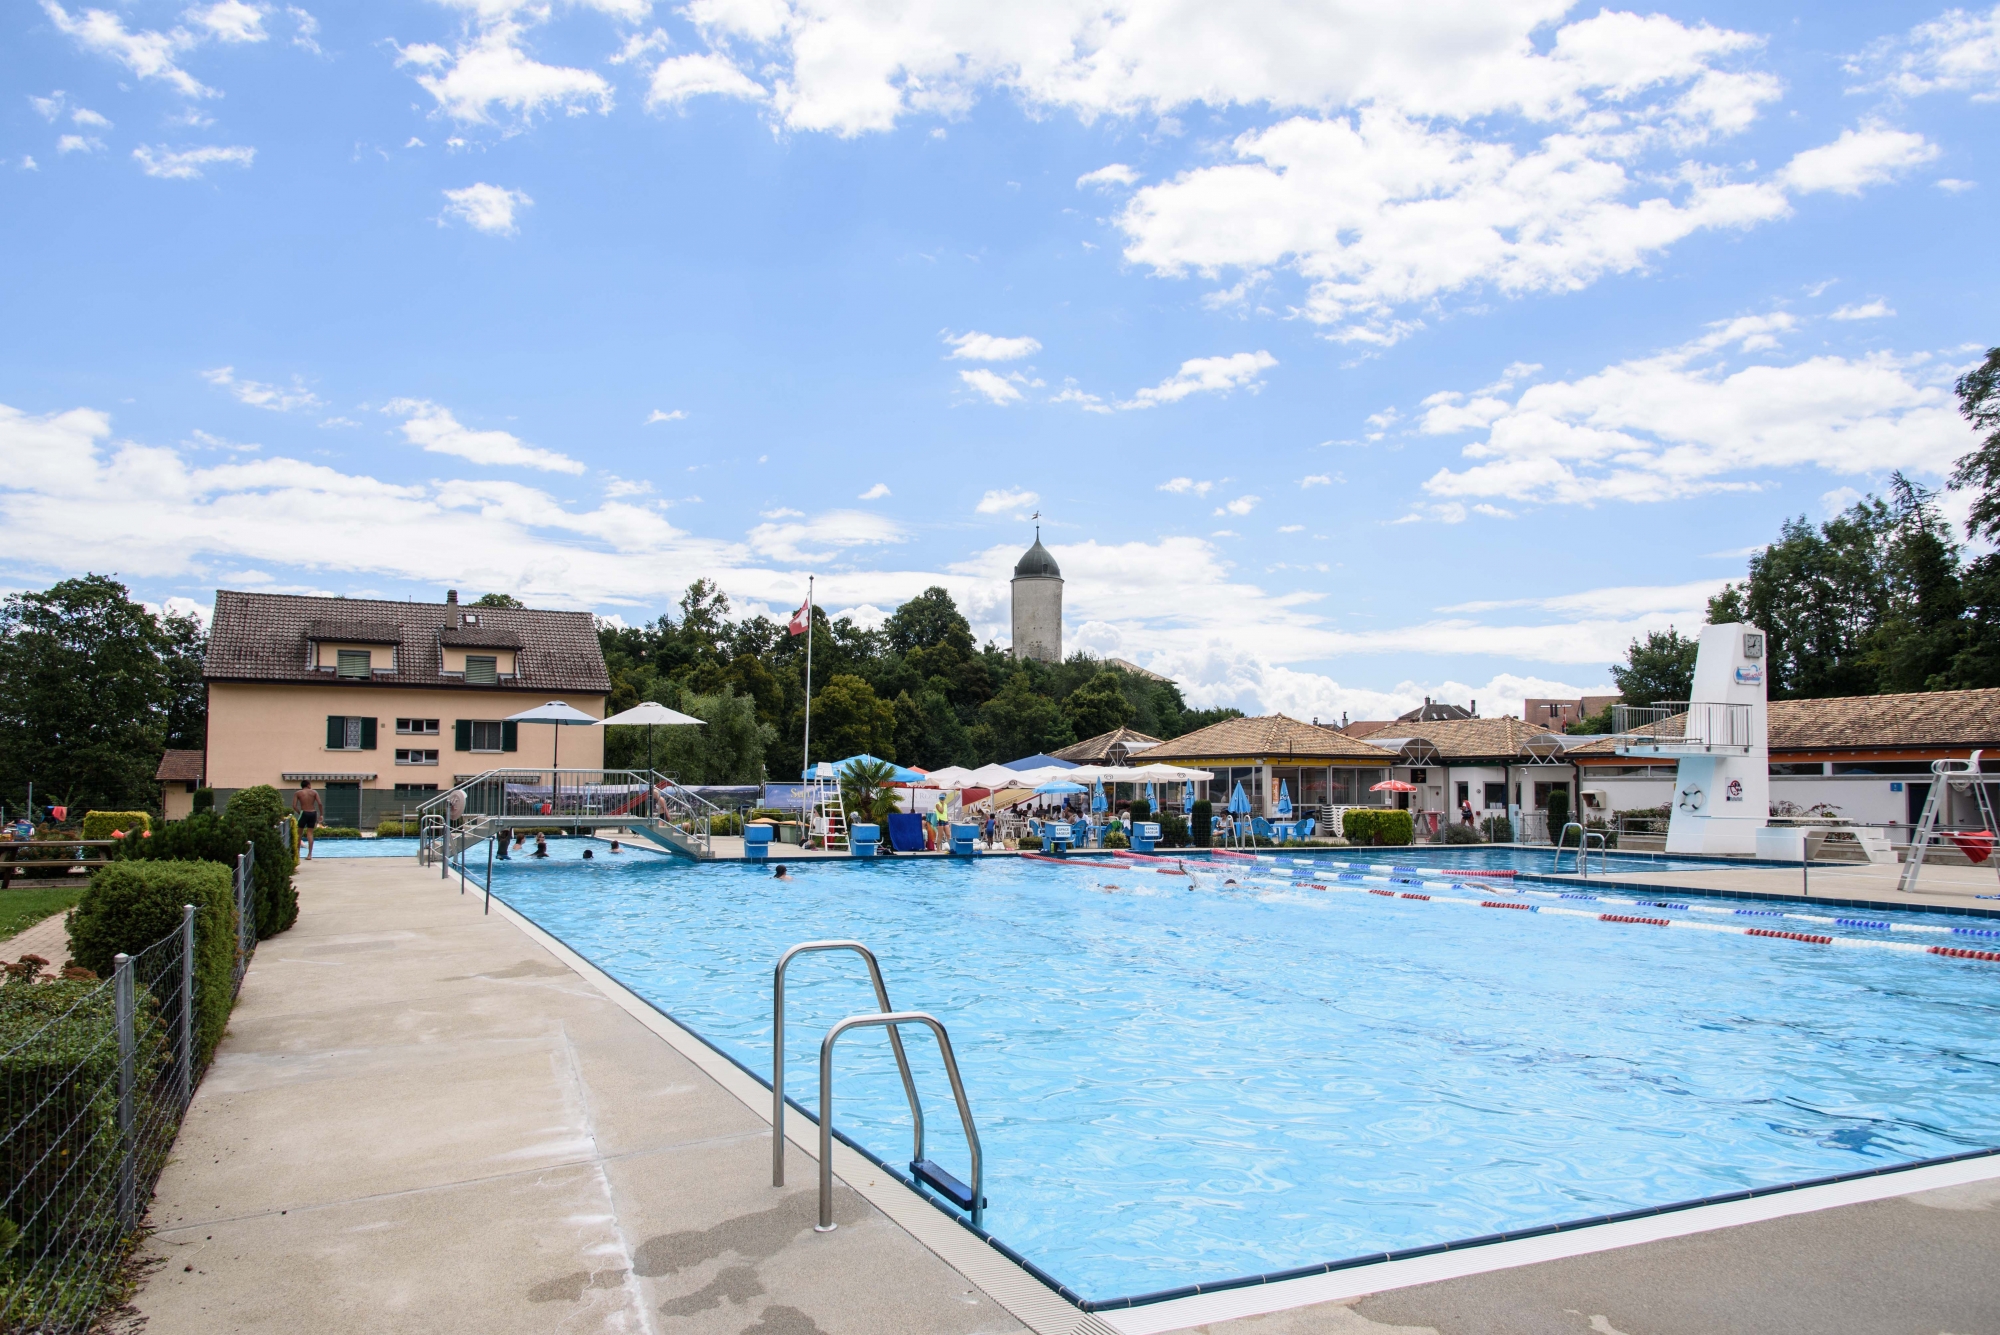 La piscine d'Aubonne est très prisée des baigneurs de toute la région mais aussi des sportifs lors du triathlon.